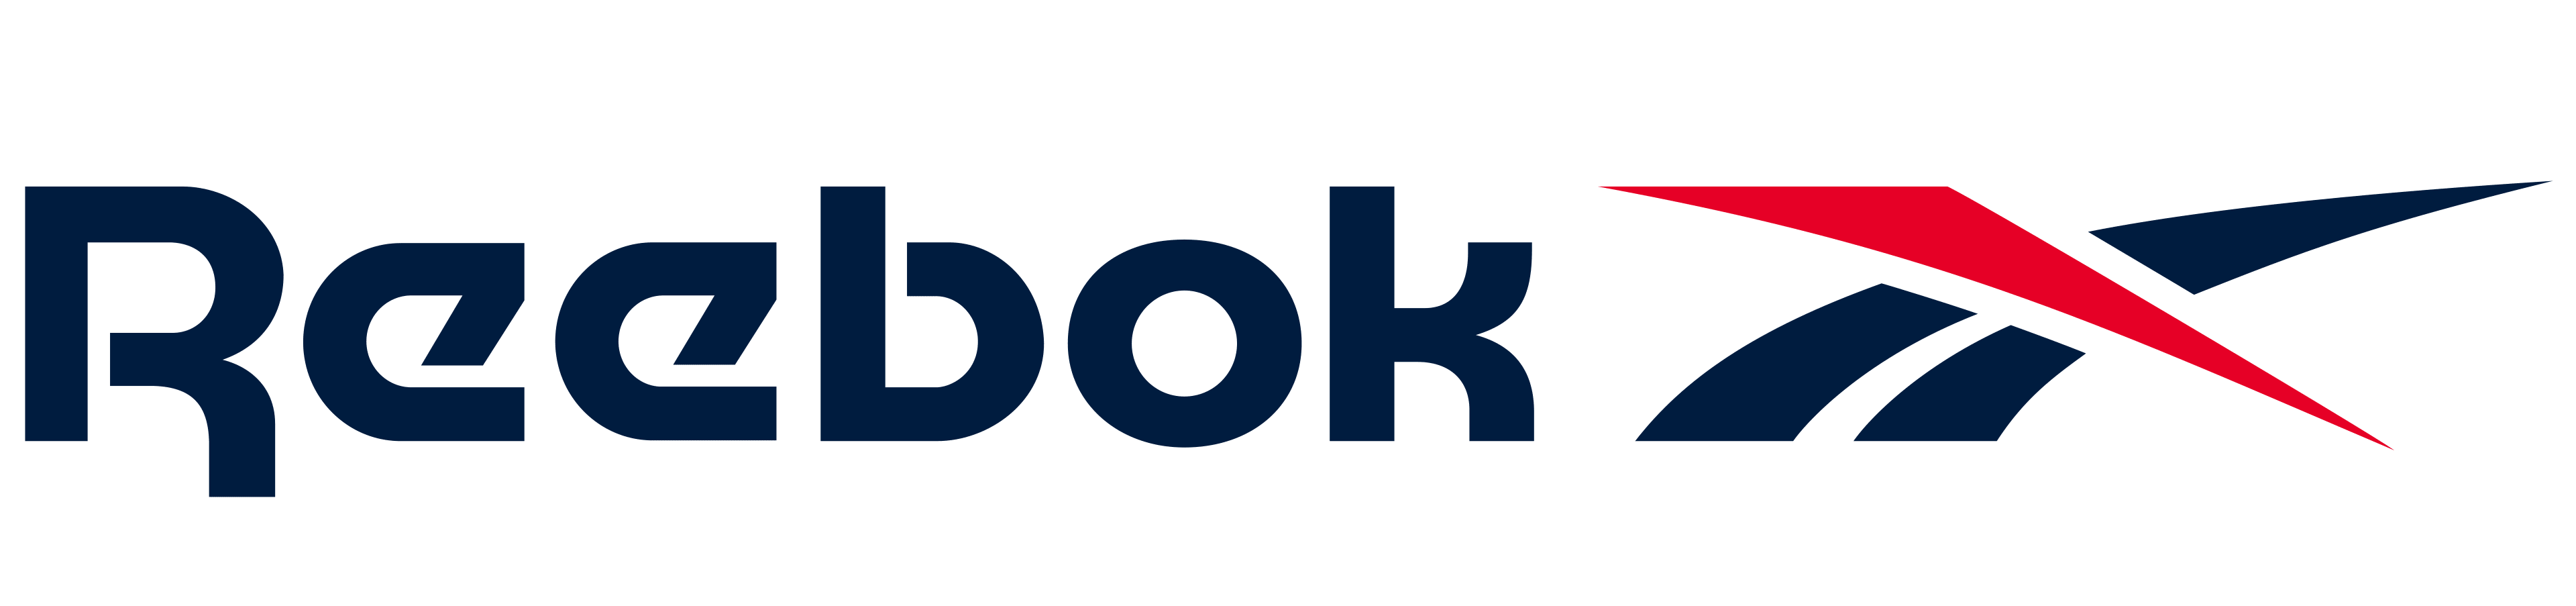 Reebok-Logo-PNG-Photo-Image